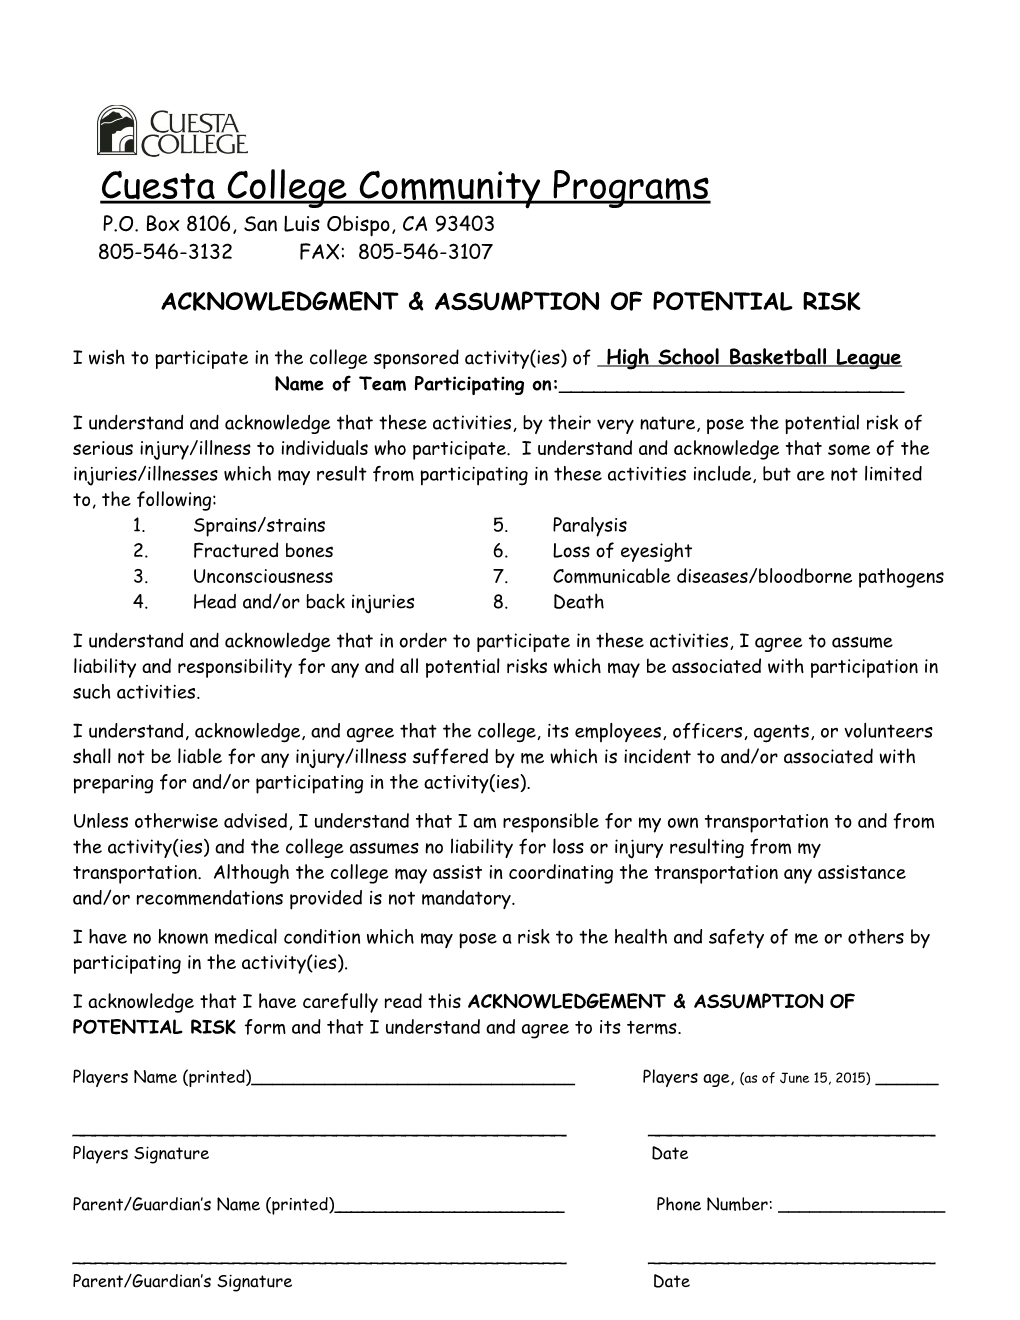 Letter to Judicael Perry/ Cuesta College Letterhead/ E-Mail Via Cuesta College Per Bob